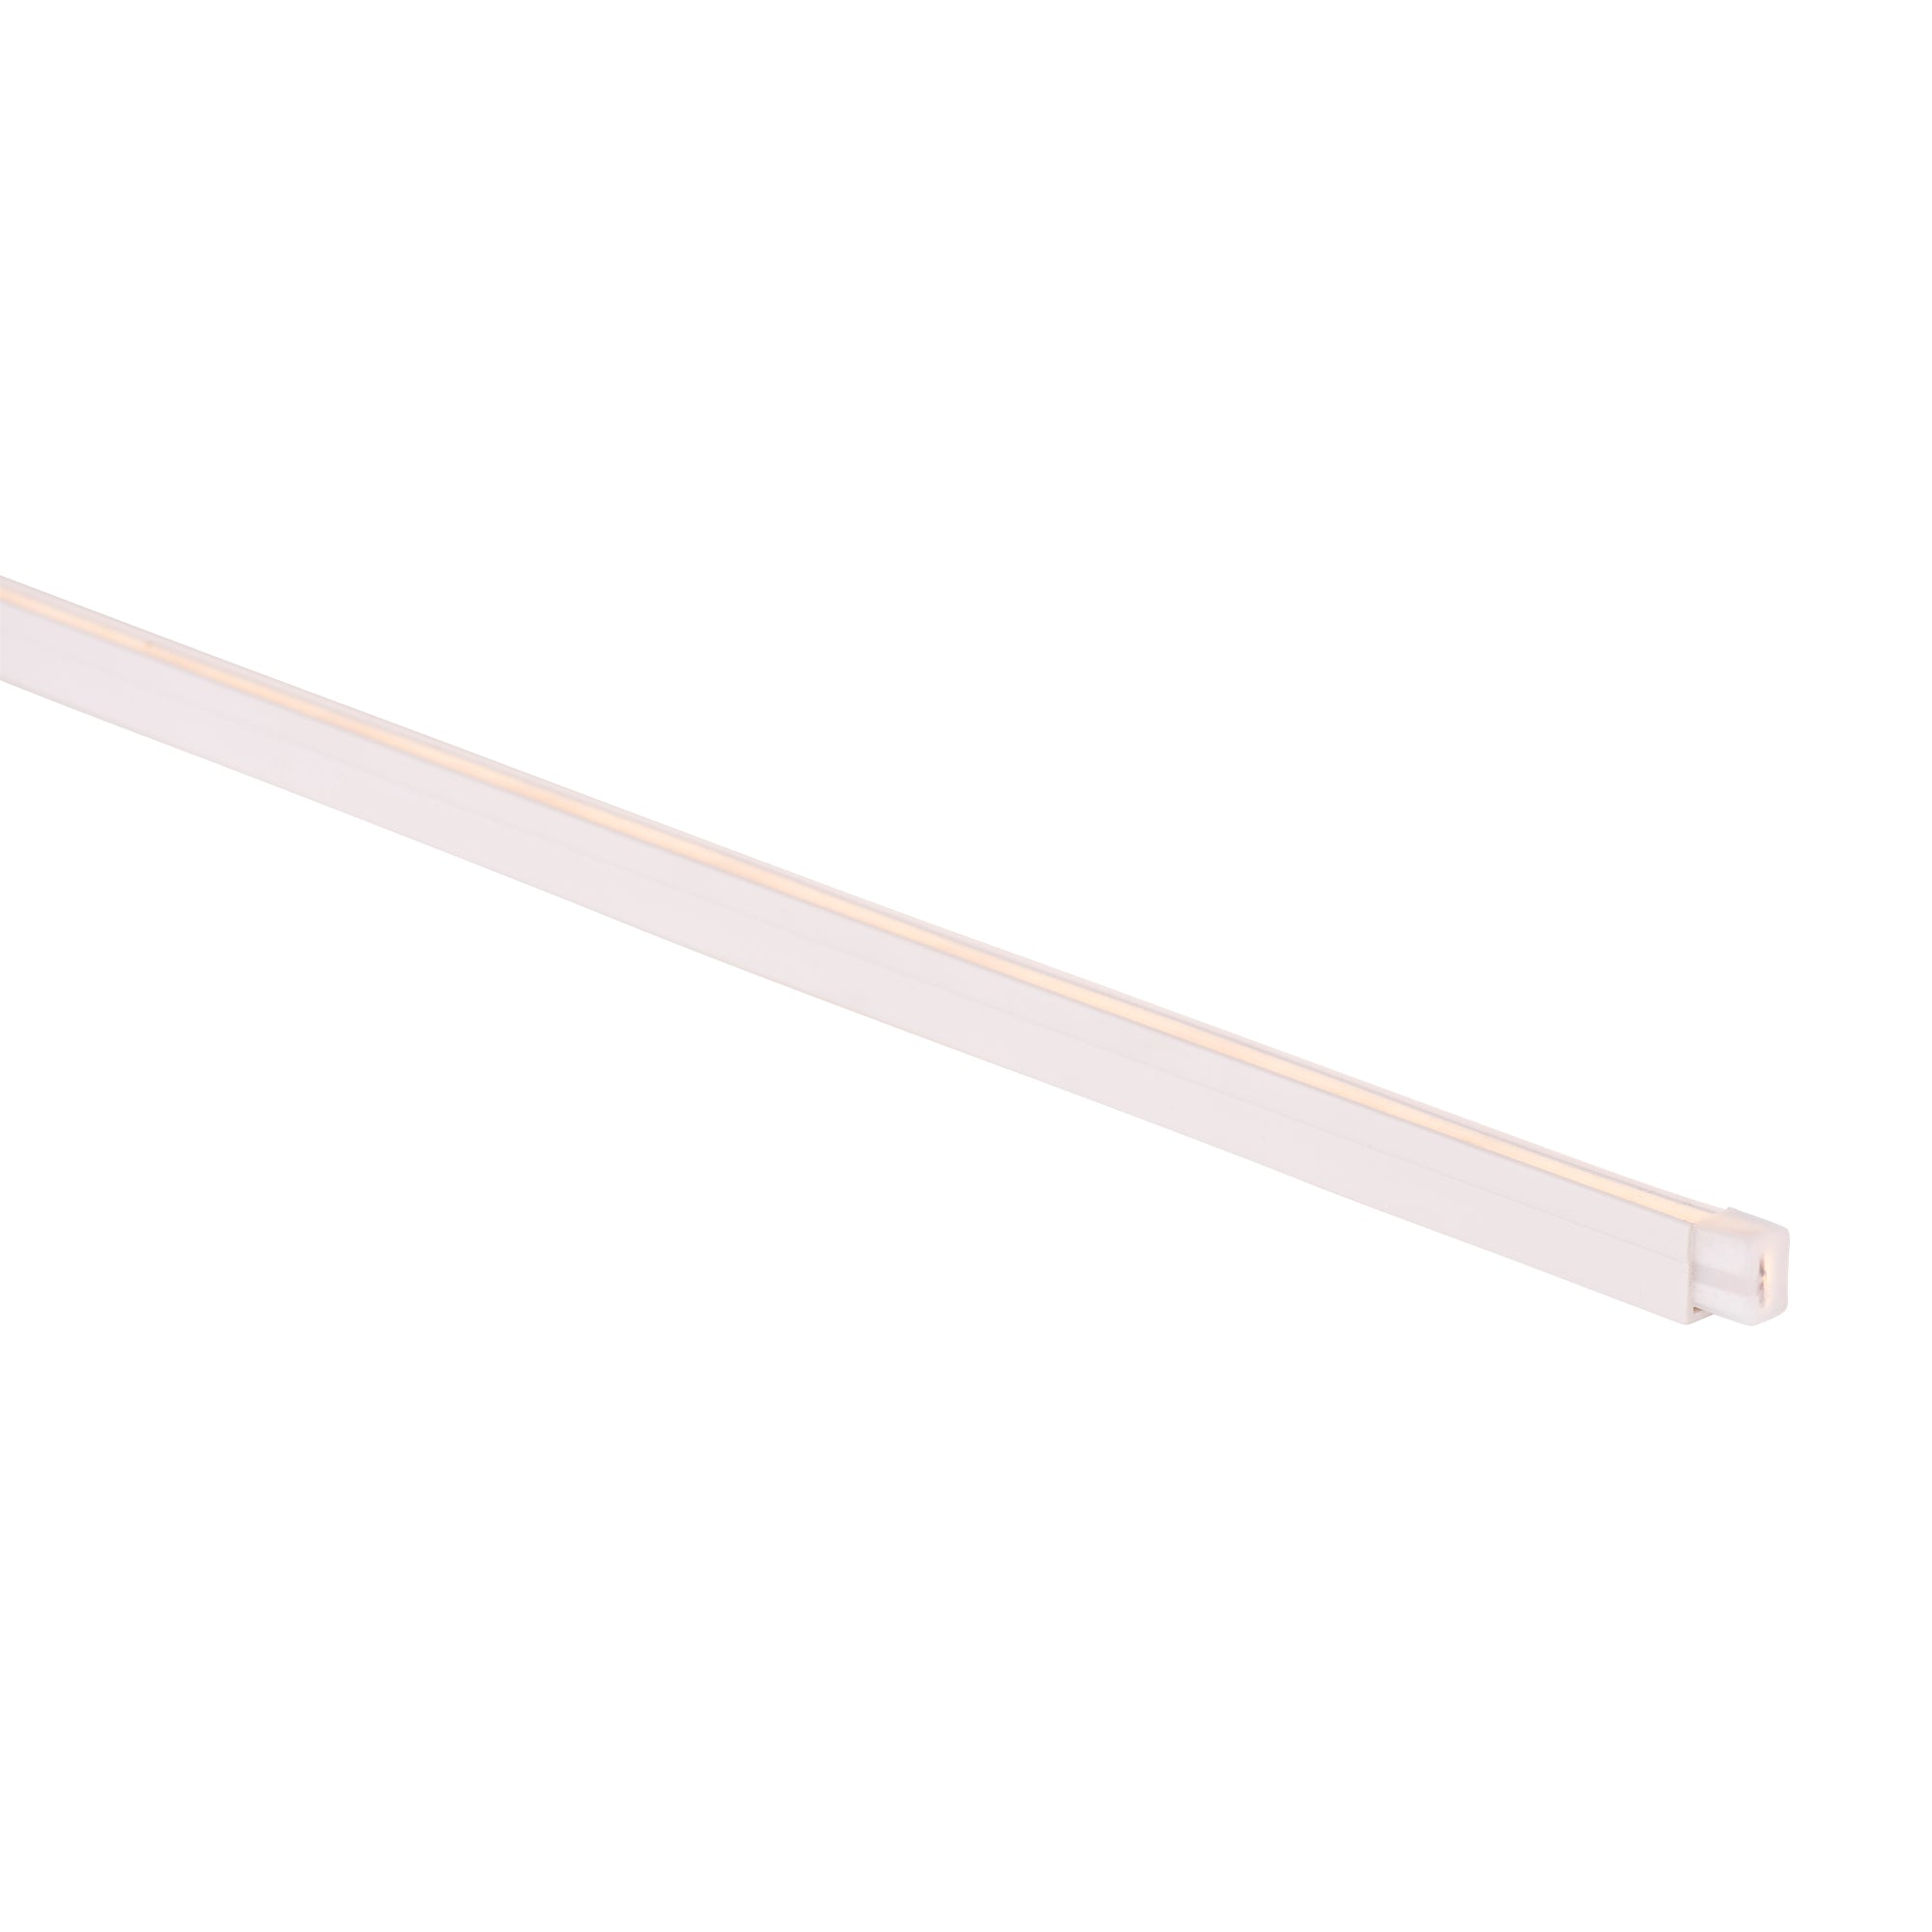 HV9792-PVC-Channel - PVC Channel to suit HV9792 Side Bend Flexible Neon LED Strip